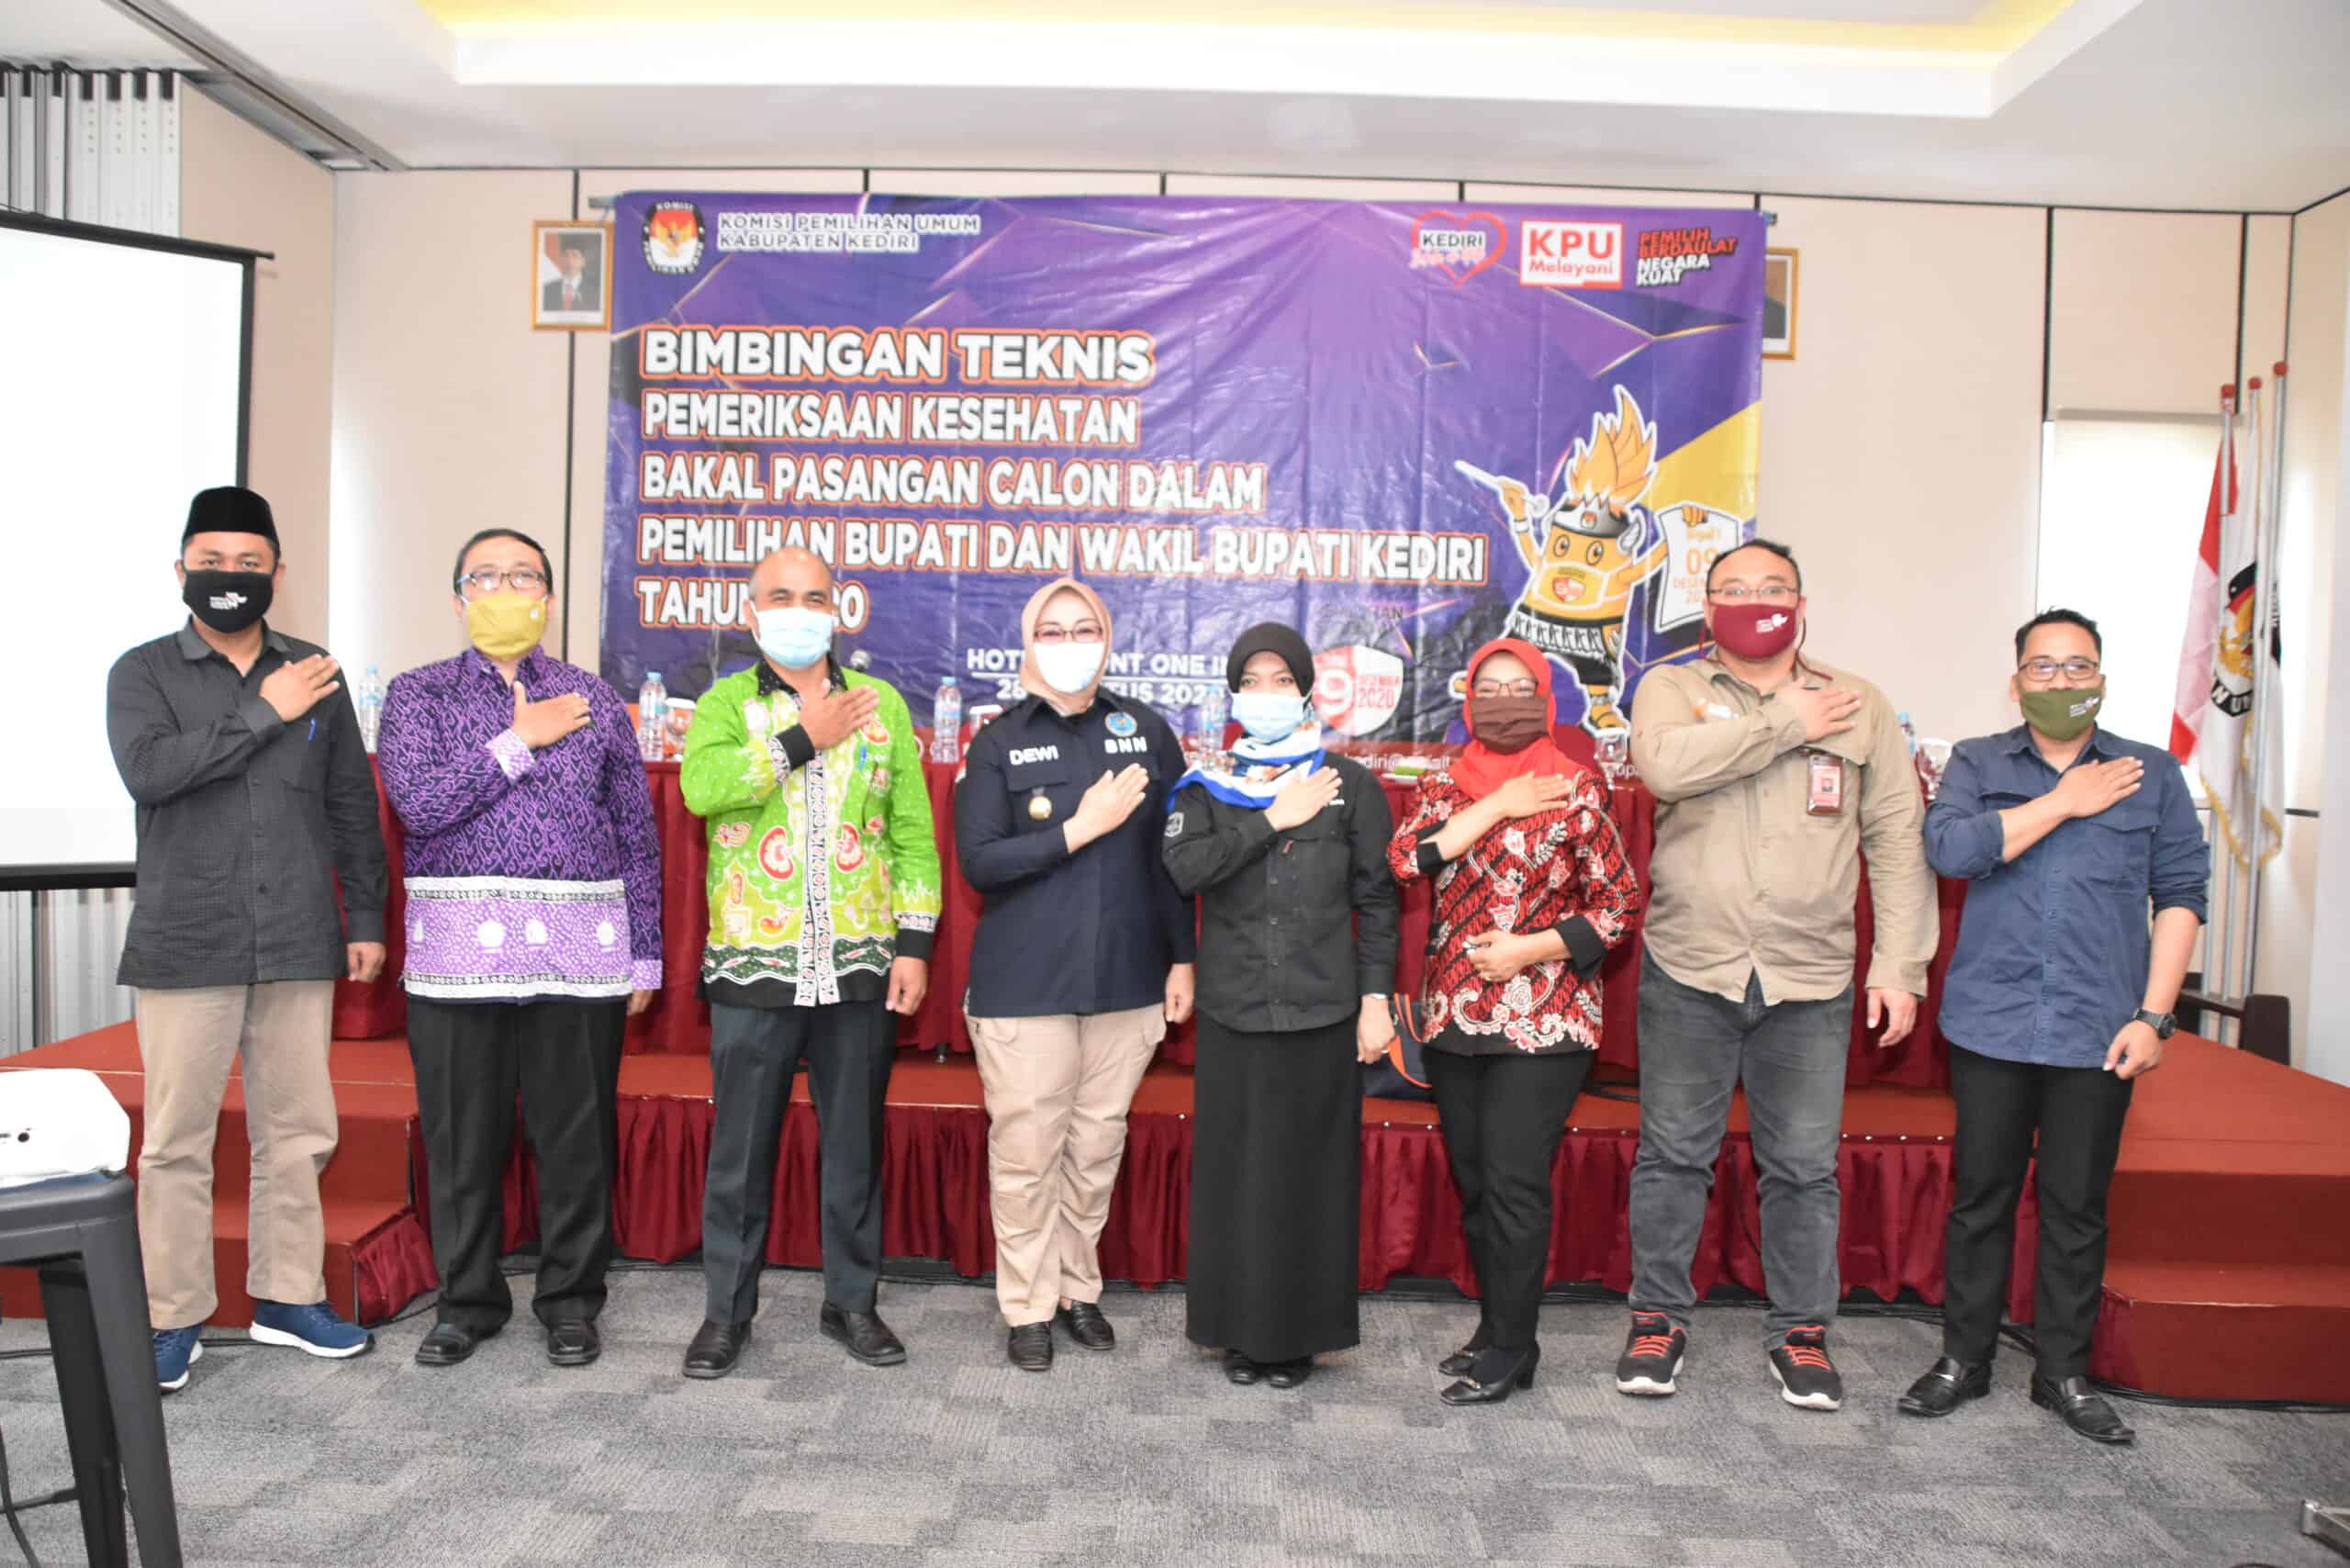 BNN Kabupaten Kediri, IDI dan HIMPSI Dukung KPU Lakukan Pemeriksaan Kesehatan Bacabup